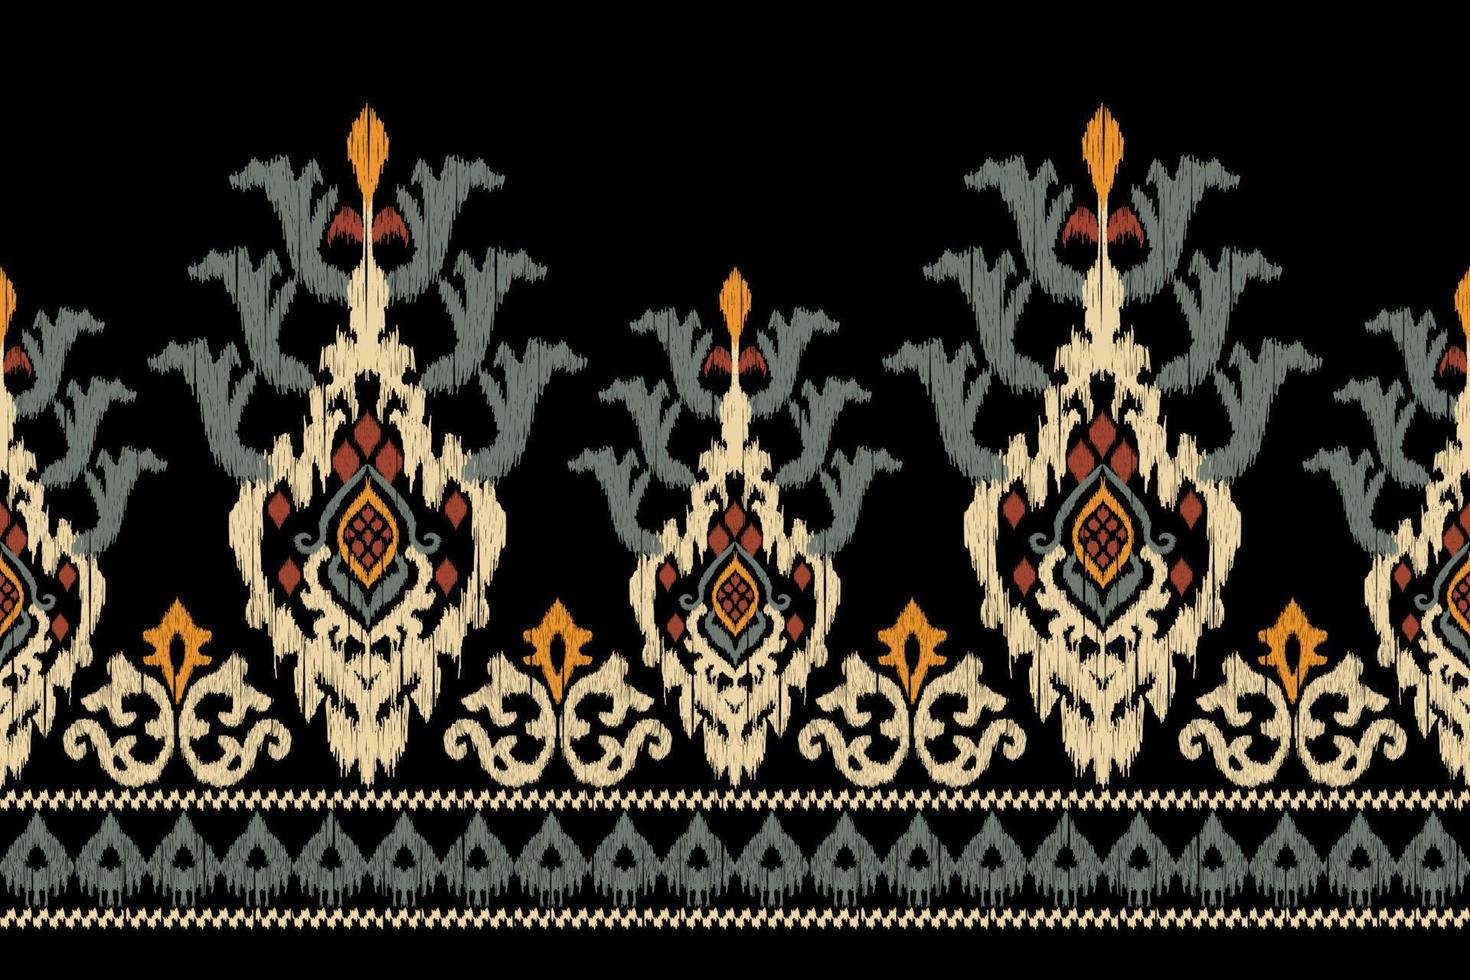 broderie cachemire florale ikat sur fond noir.motif oriental ethnique géométrique style traditionnel.aztèque illustration vectorielle abstraite.design pour la texture, le tissu, les vêtements, l'emballage, la décoration, le sarong. vecteur